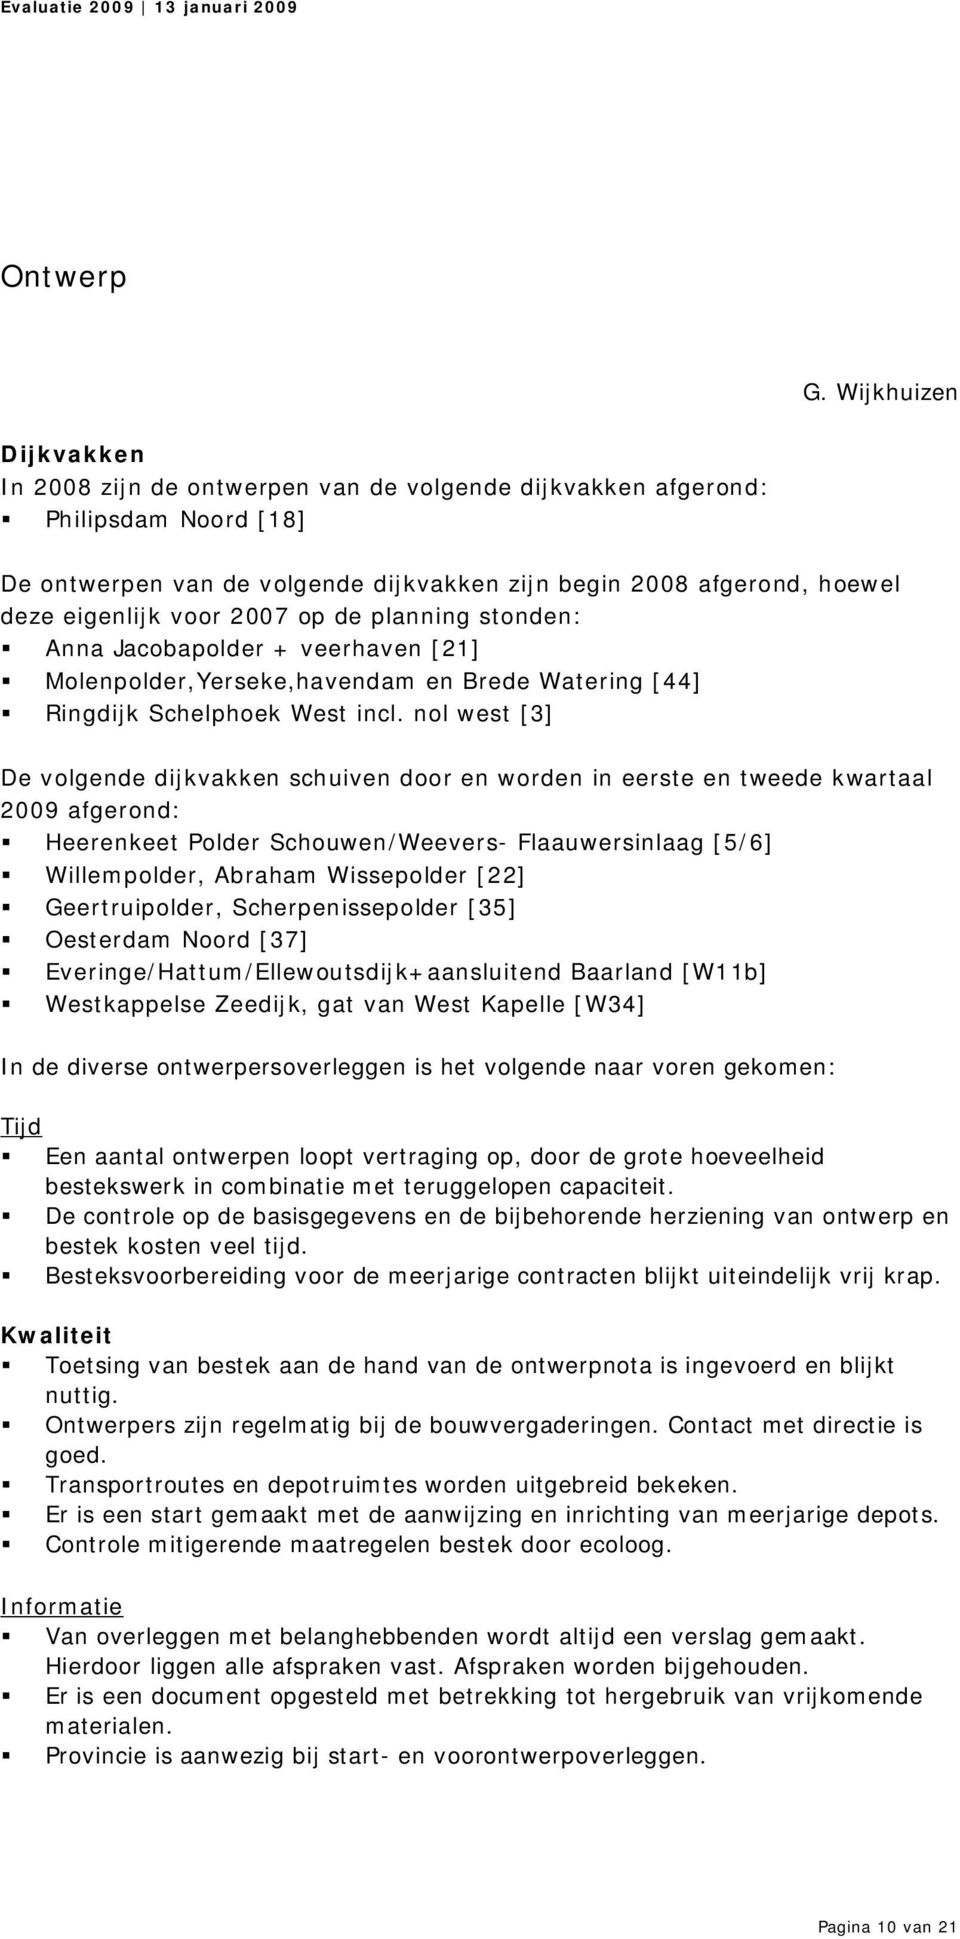 2007 op de planning stonden: Anna Jacobapolder + veerhaven [21] Molenpolder,Yerseke,havendam en Brede Watering [44] Ringdijk Schelphoek West incl.